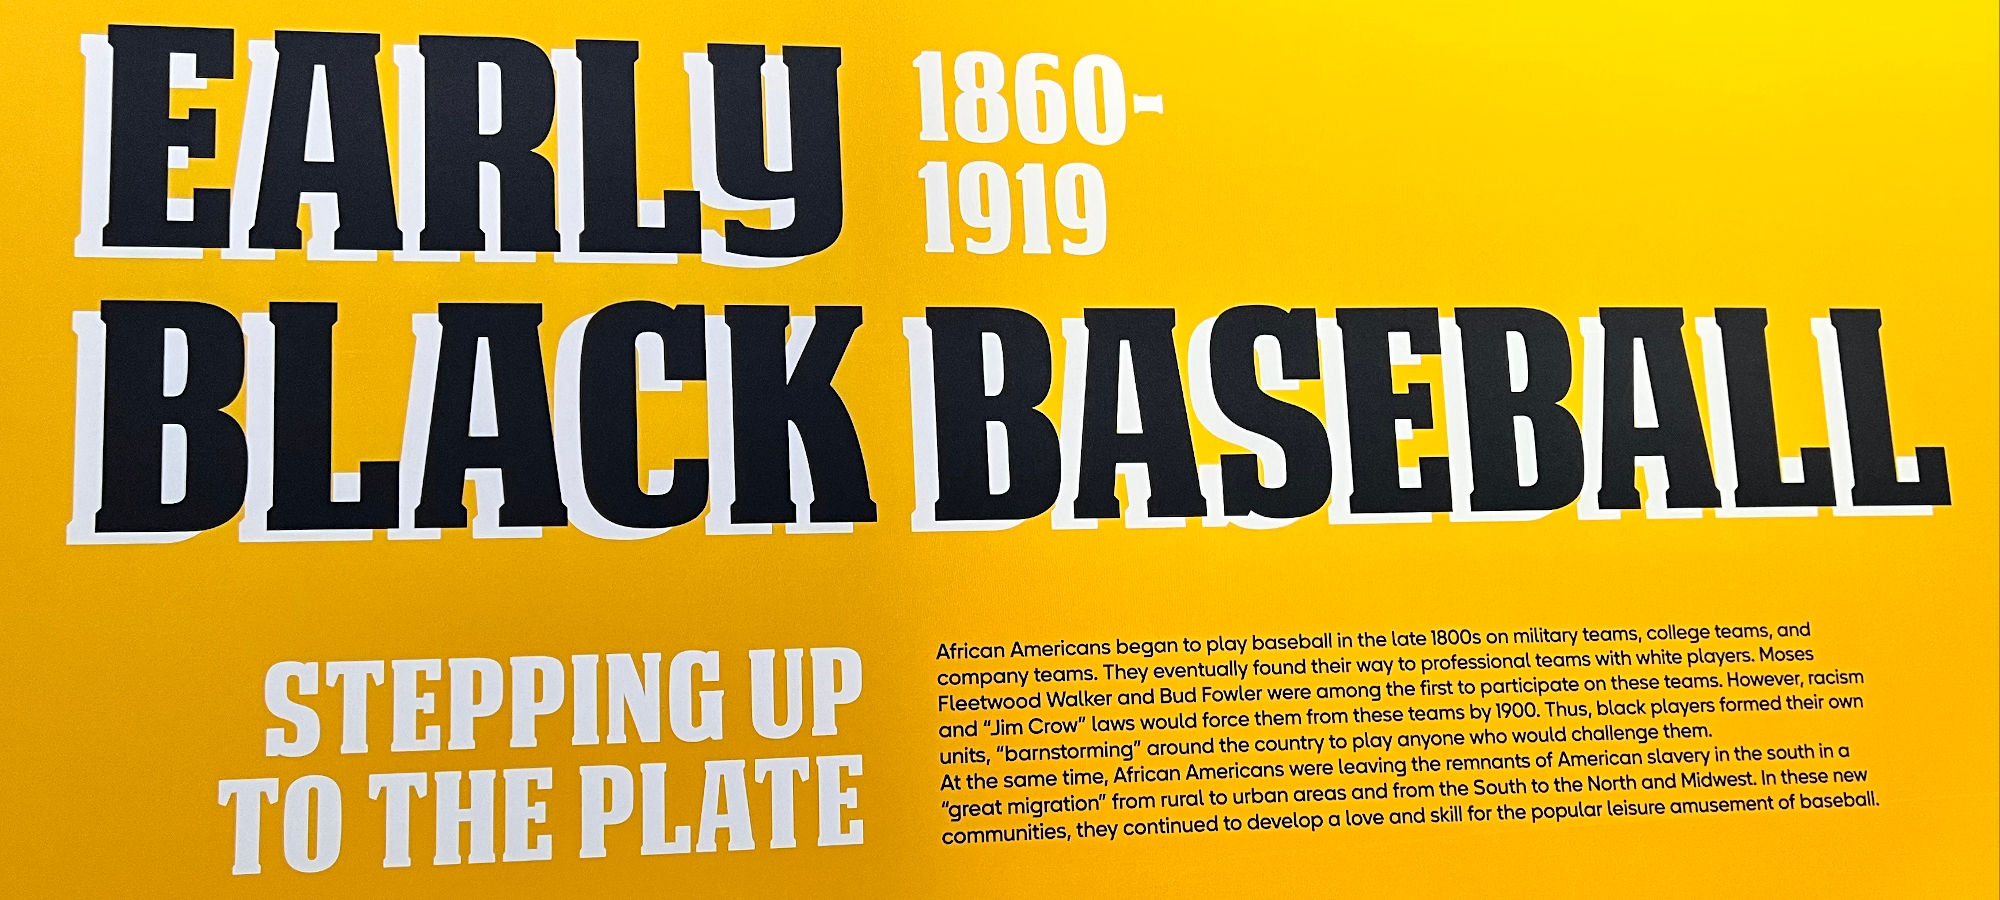 Negro Leagues Early Black Baseball